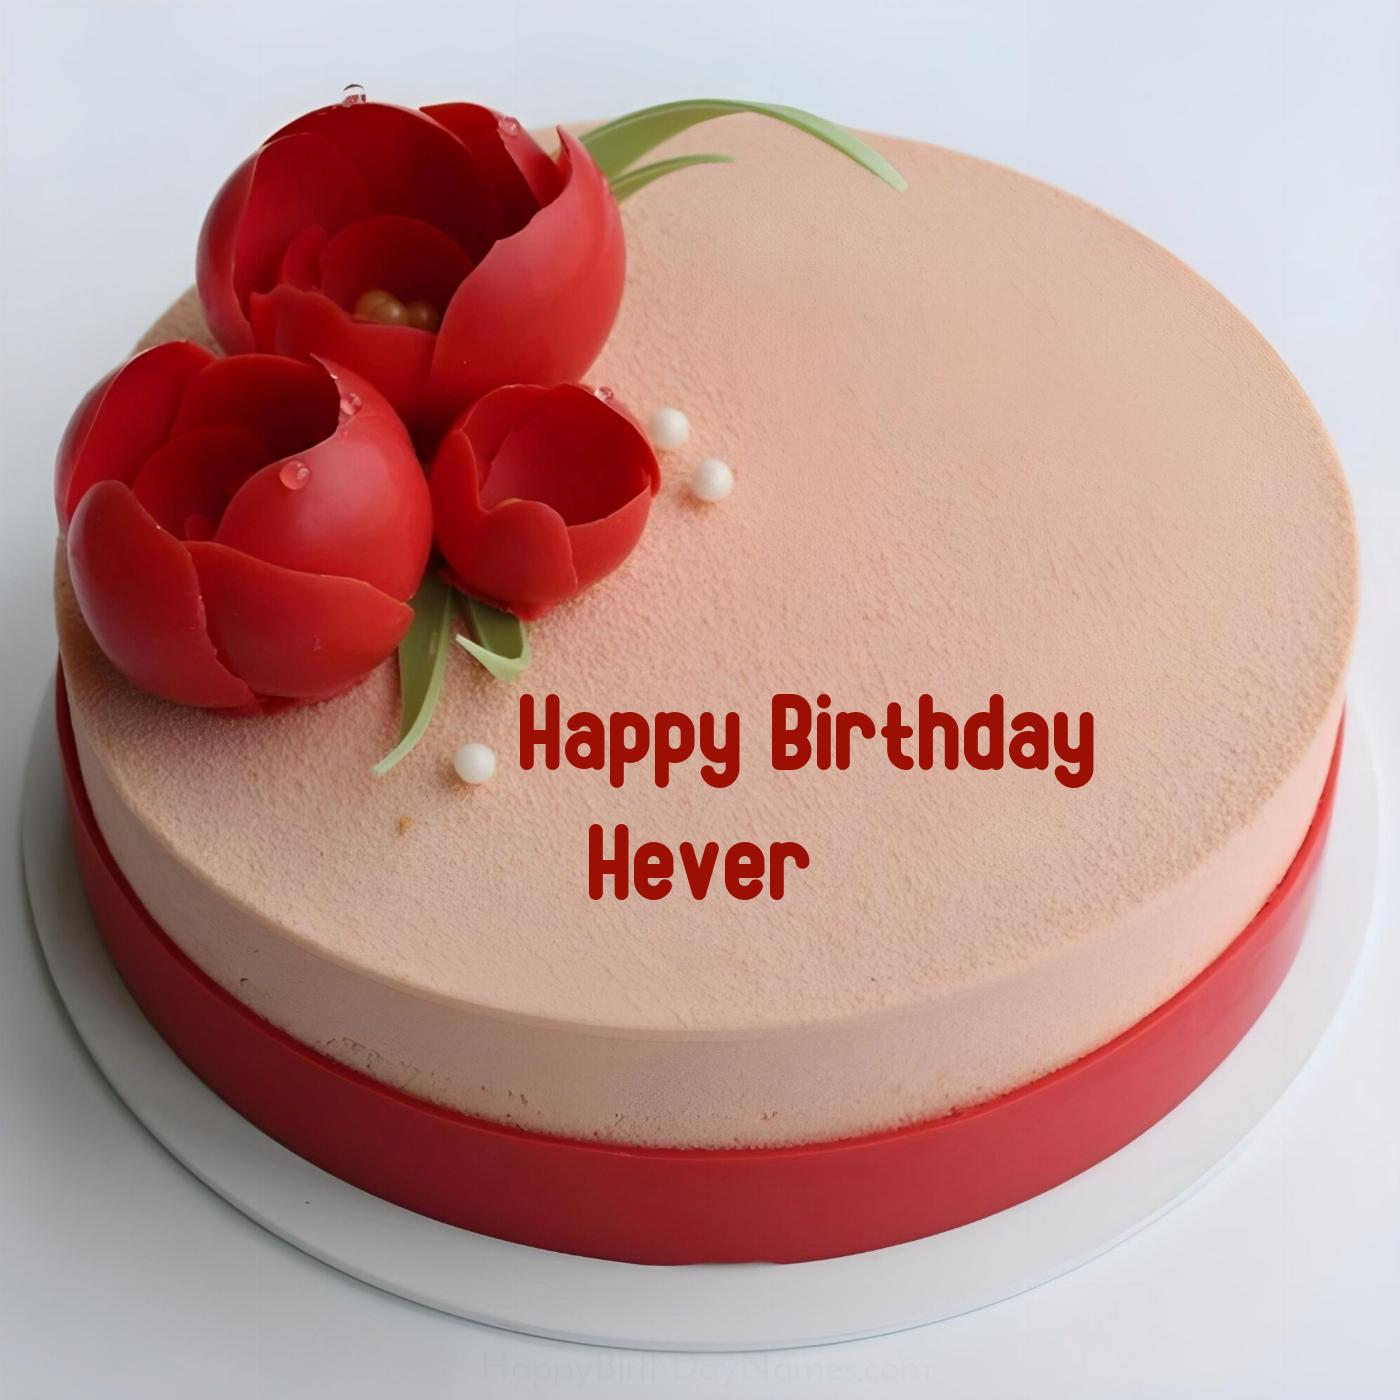 Happy Birthday Hever Velvet Flowers Cake